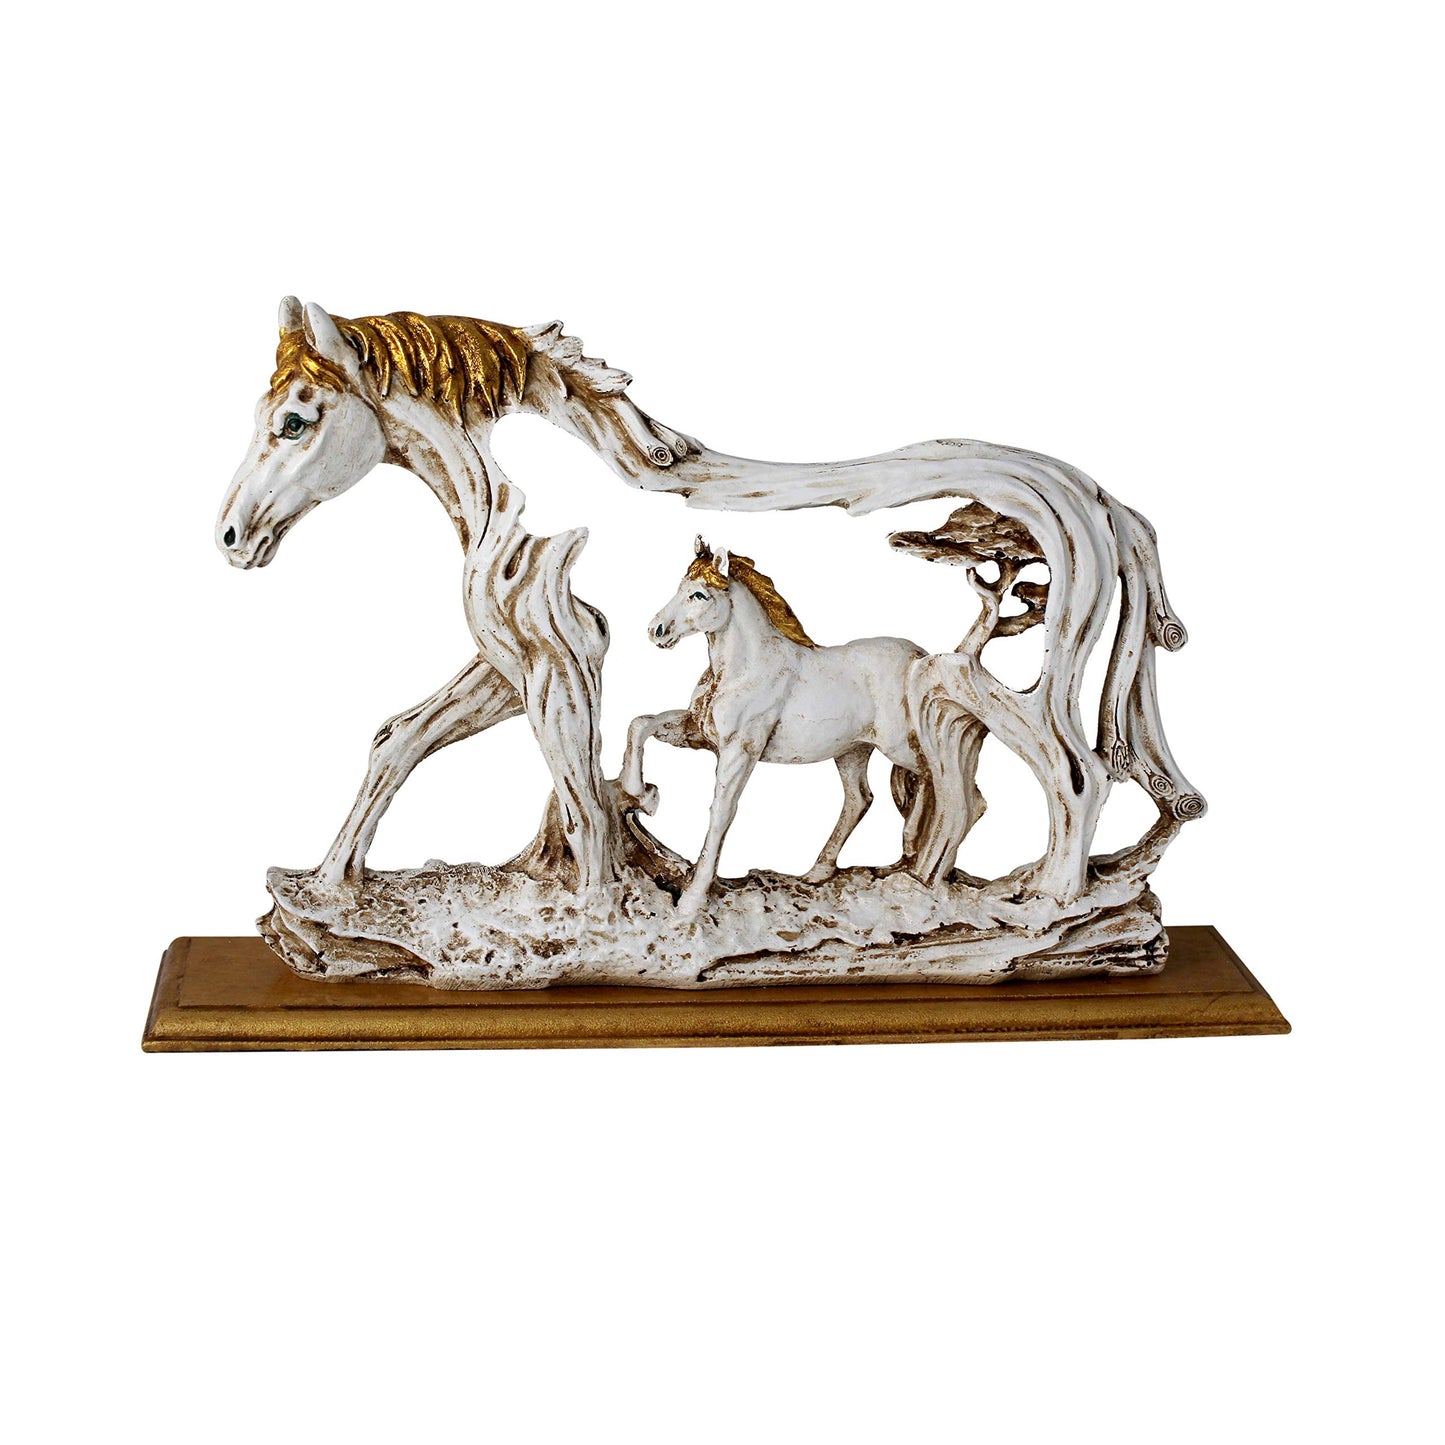 Polyresin Horse & Baby Horse Decorative Showpiece